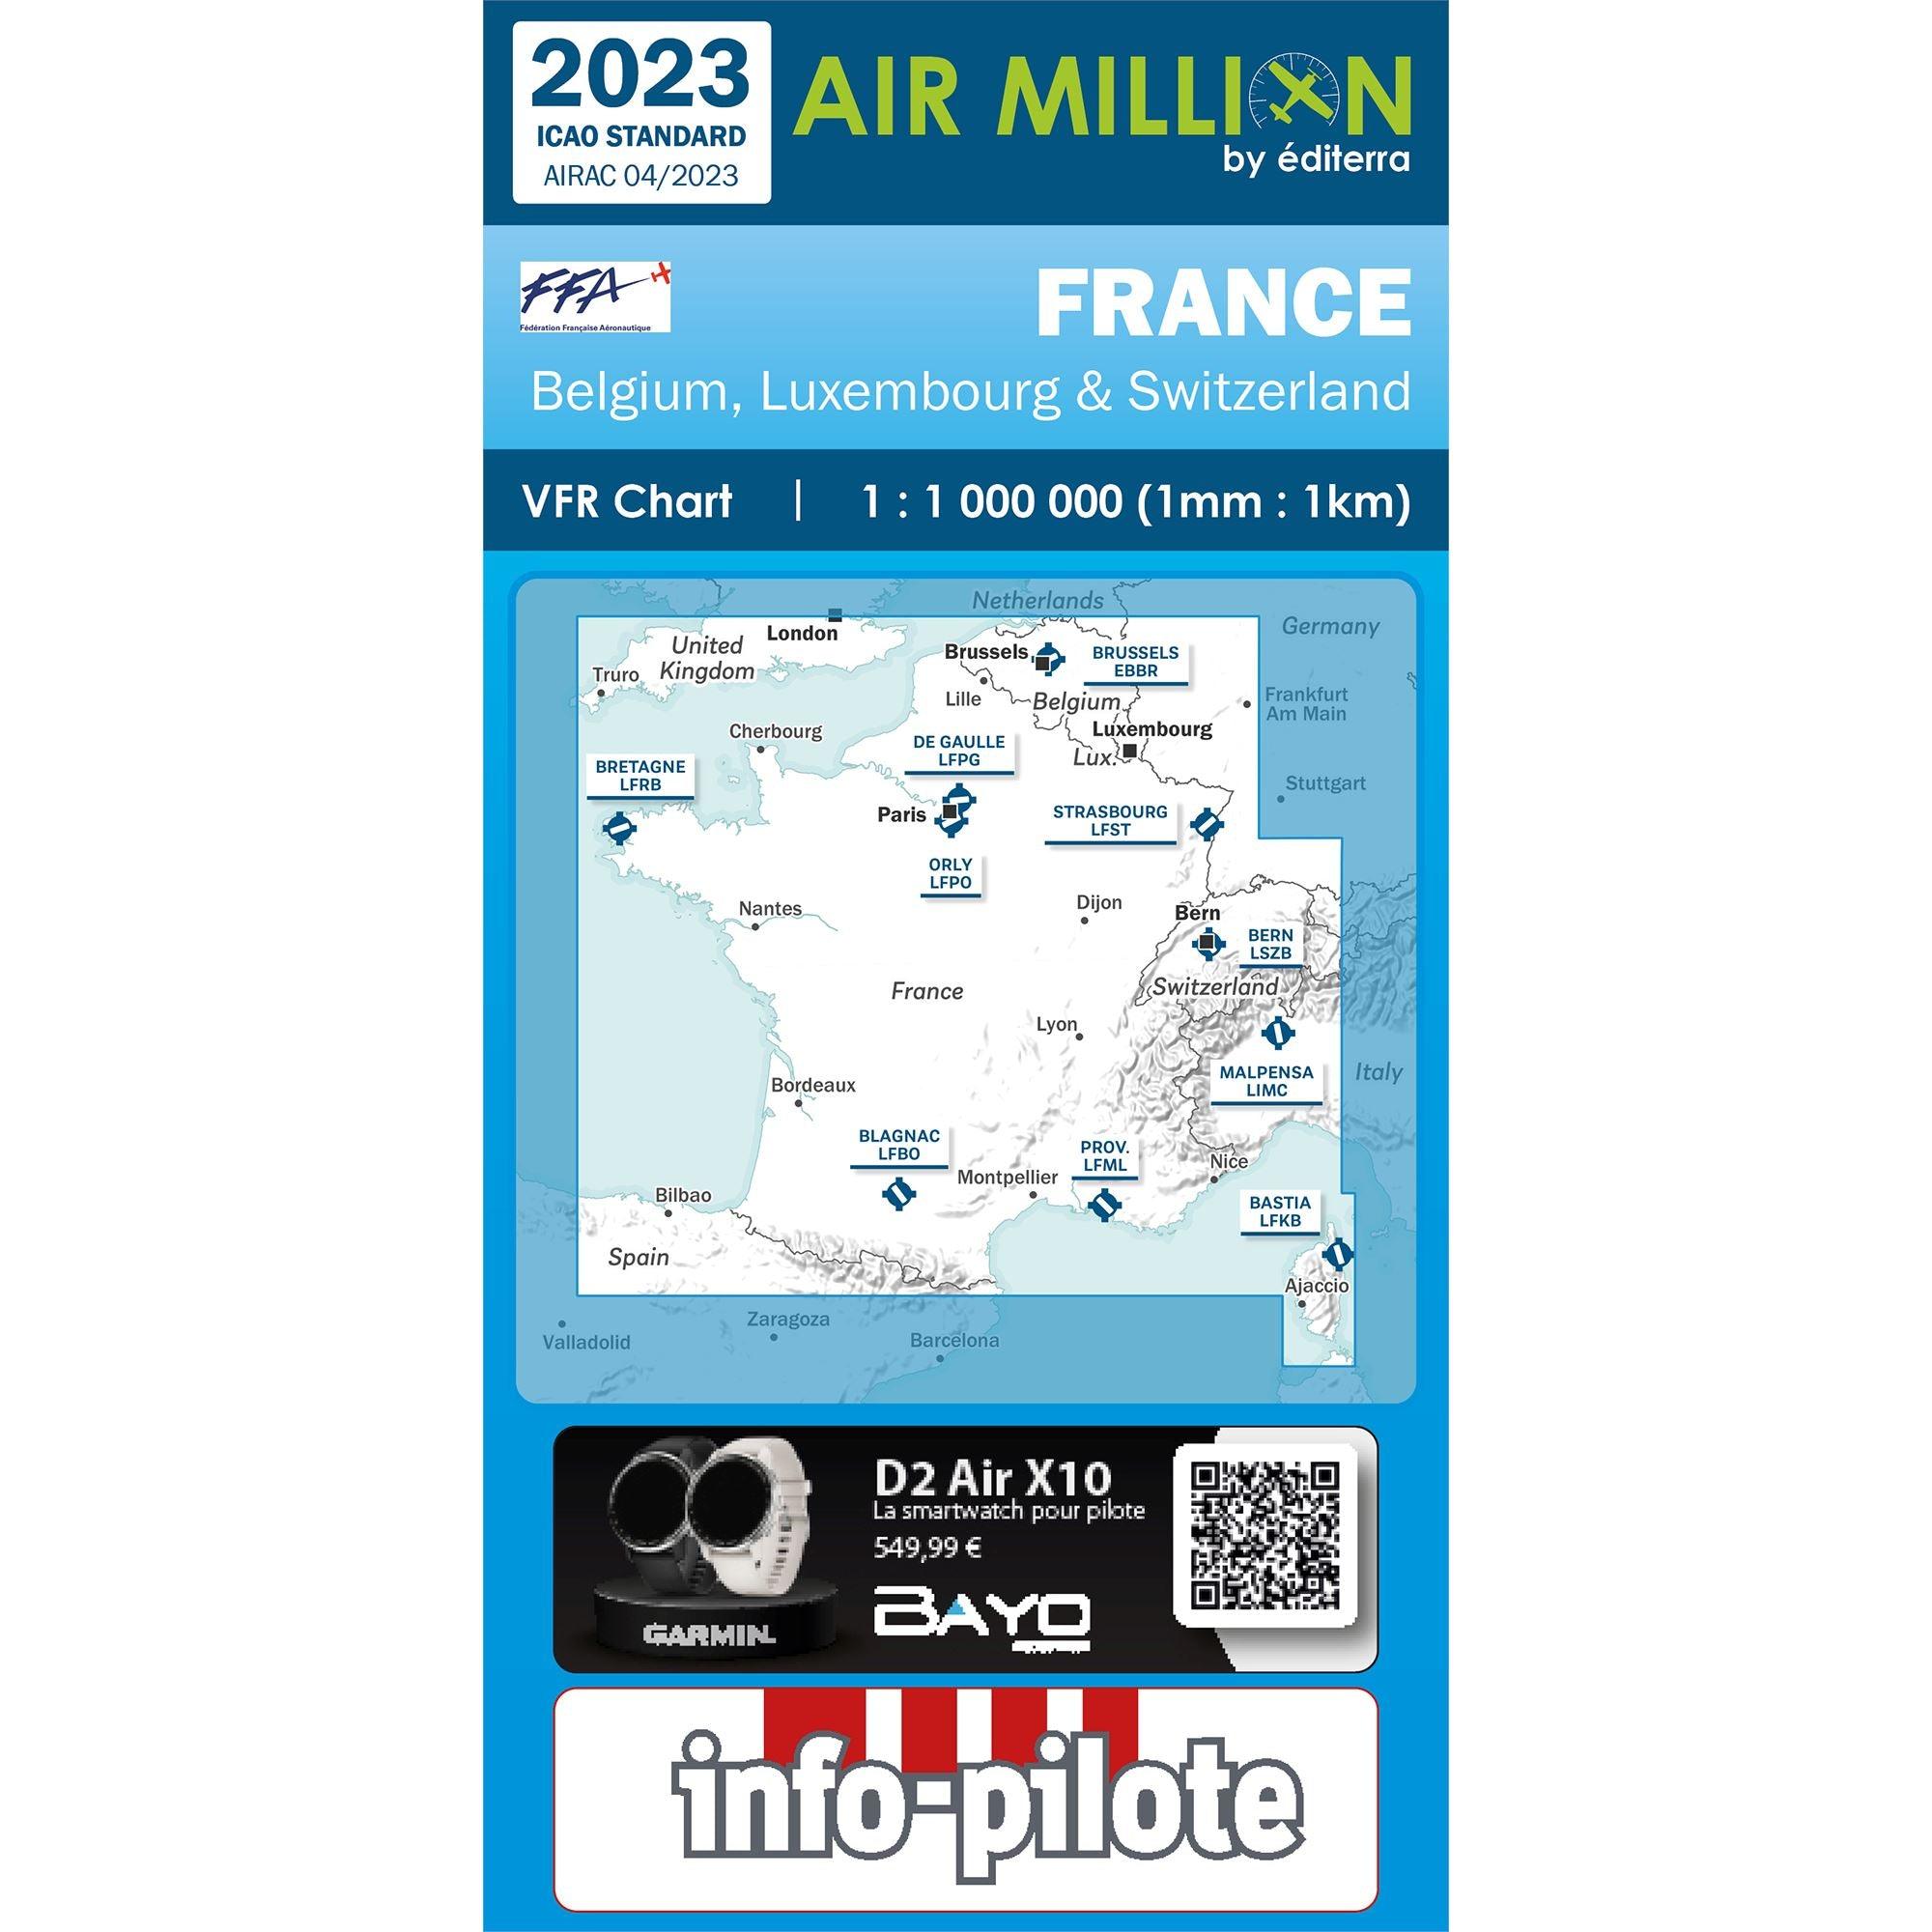 CARTE AIR MILLION FRANCE 2023 Cartes Air Million Editerra